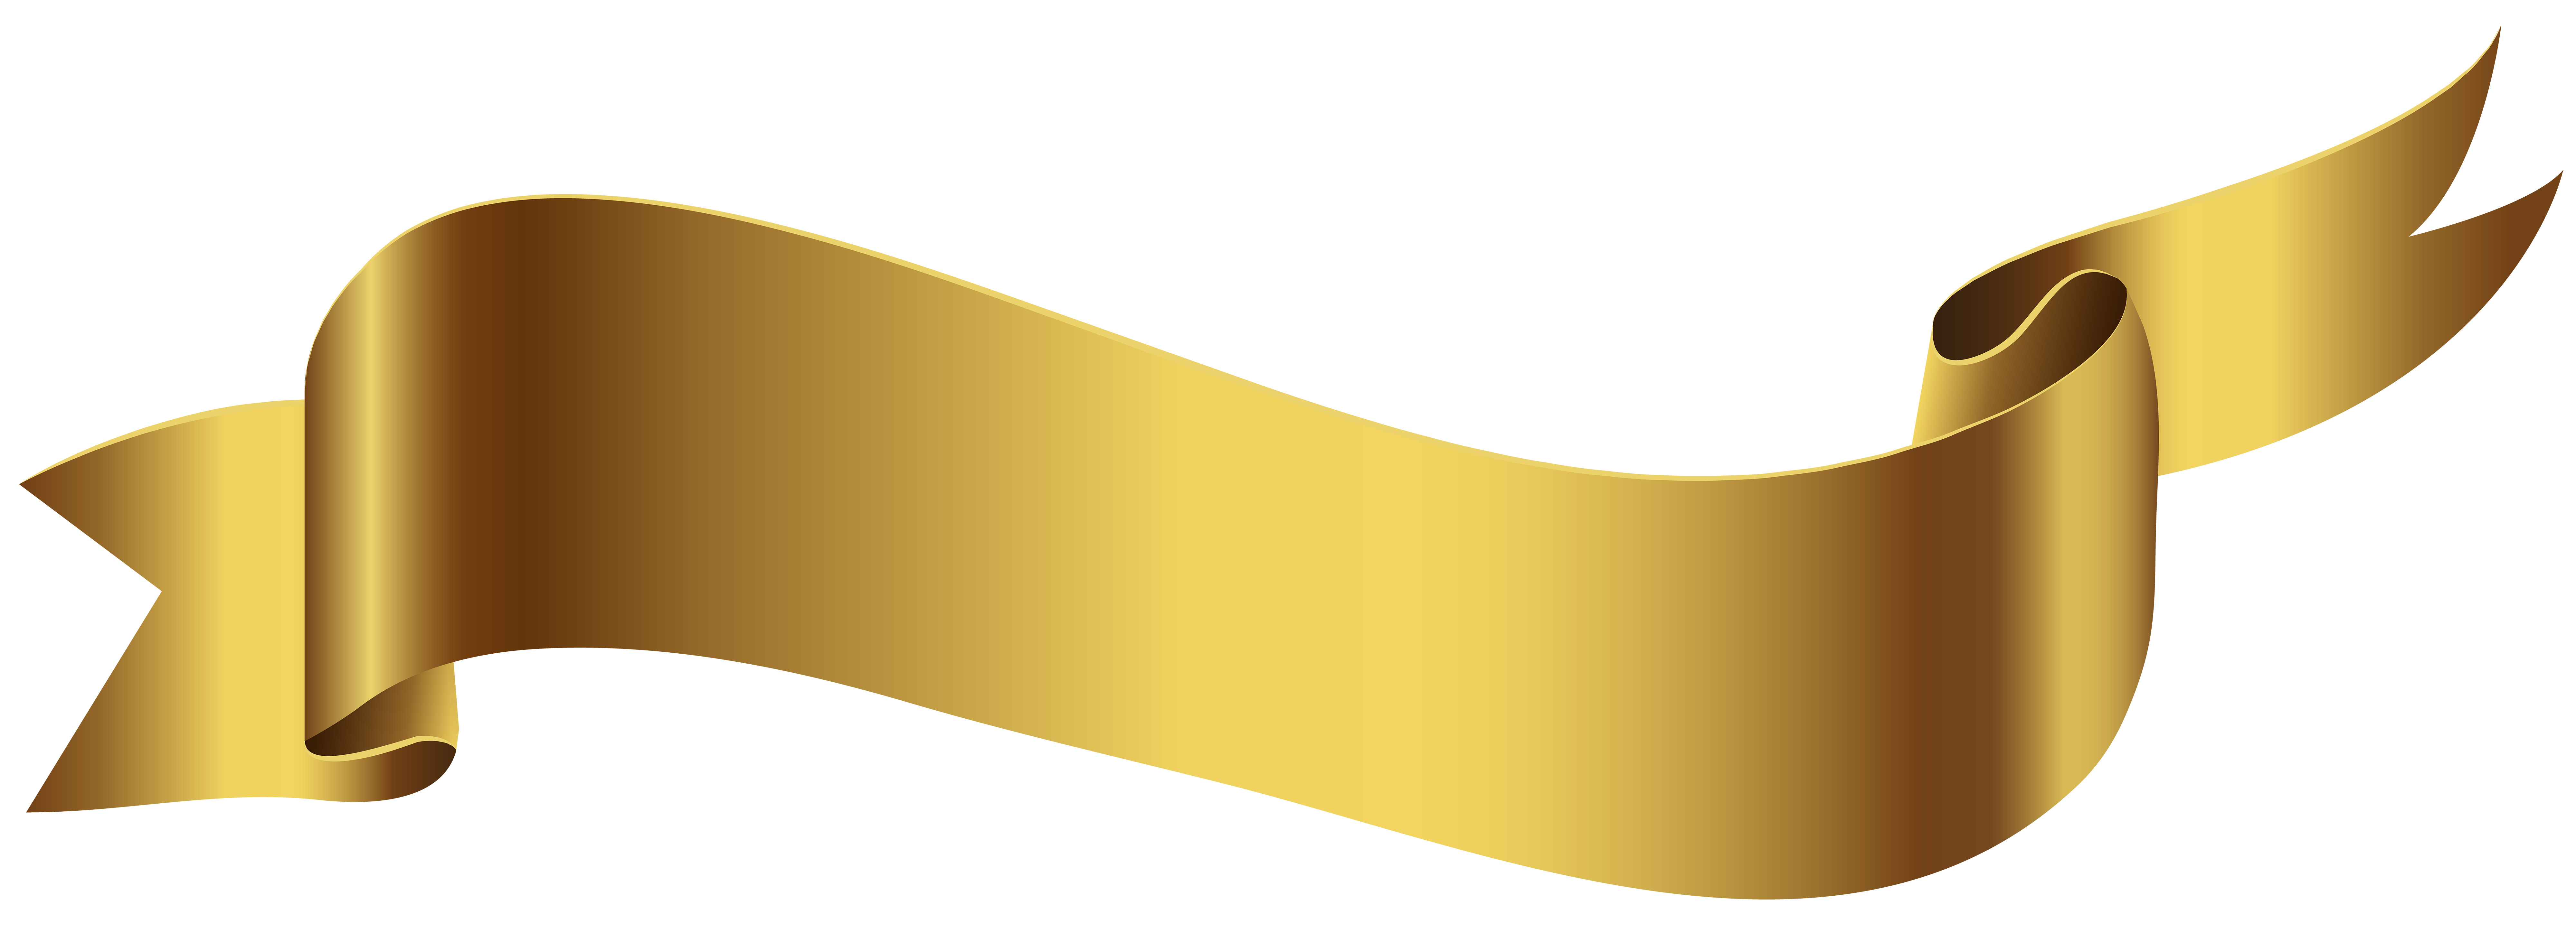 gold banner clip art